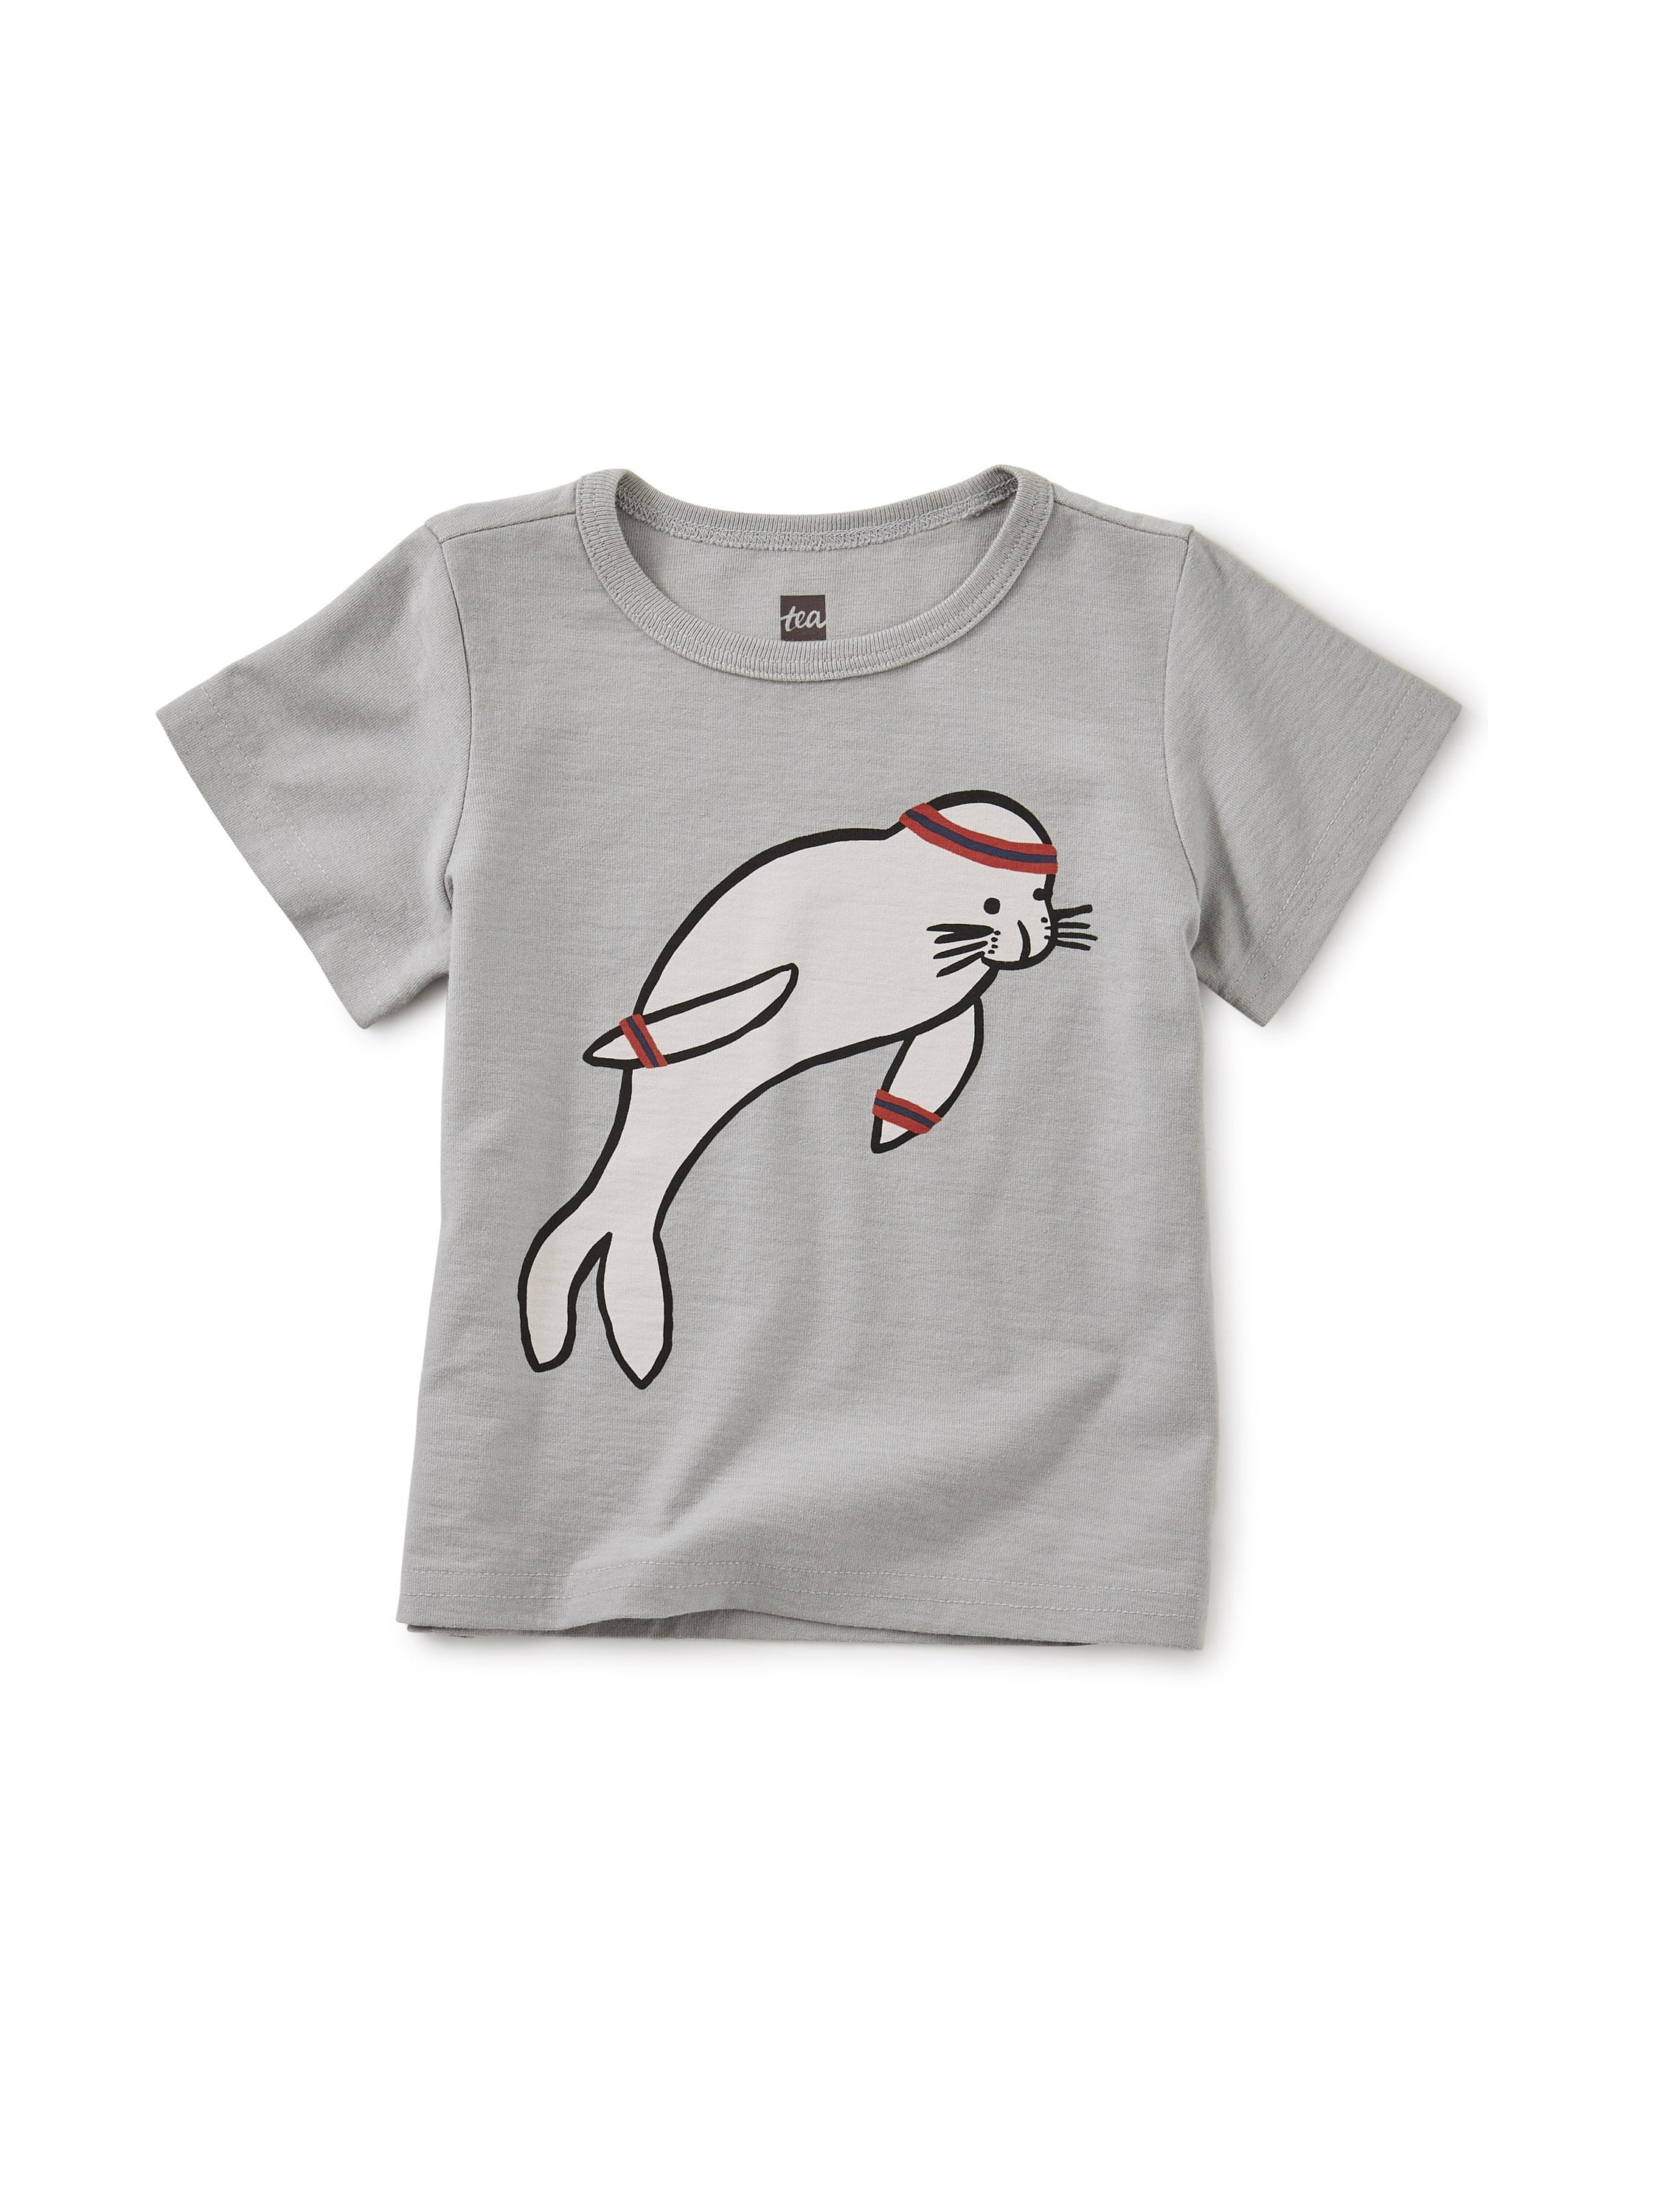 Camiseta bebê do leão de mar